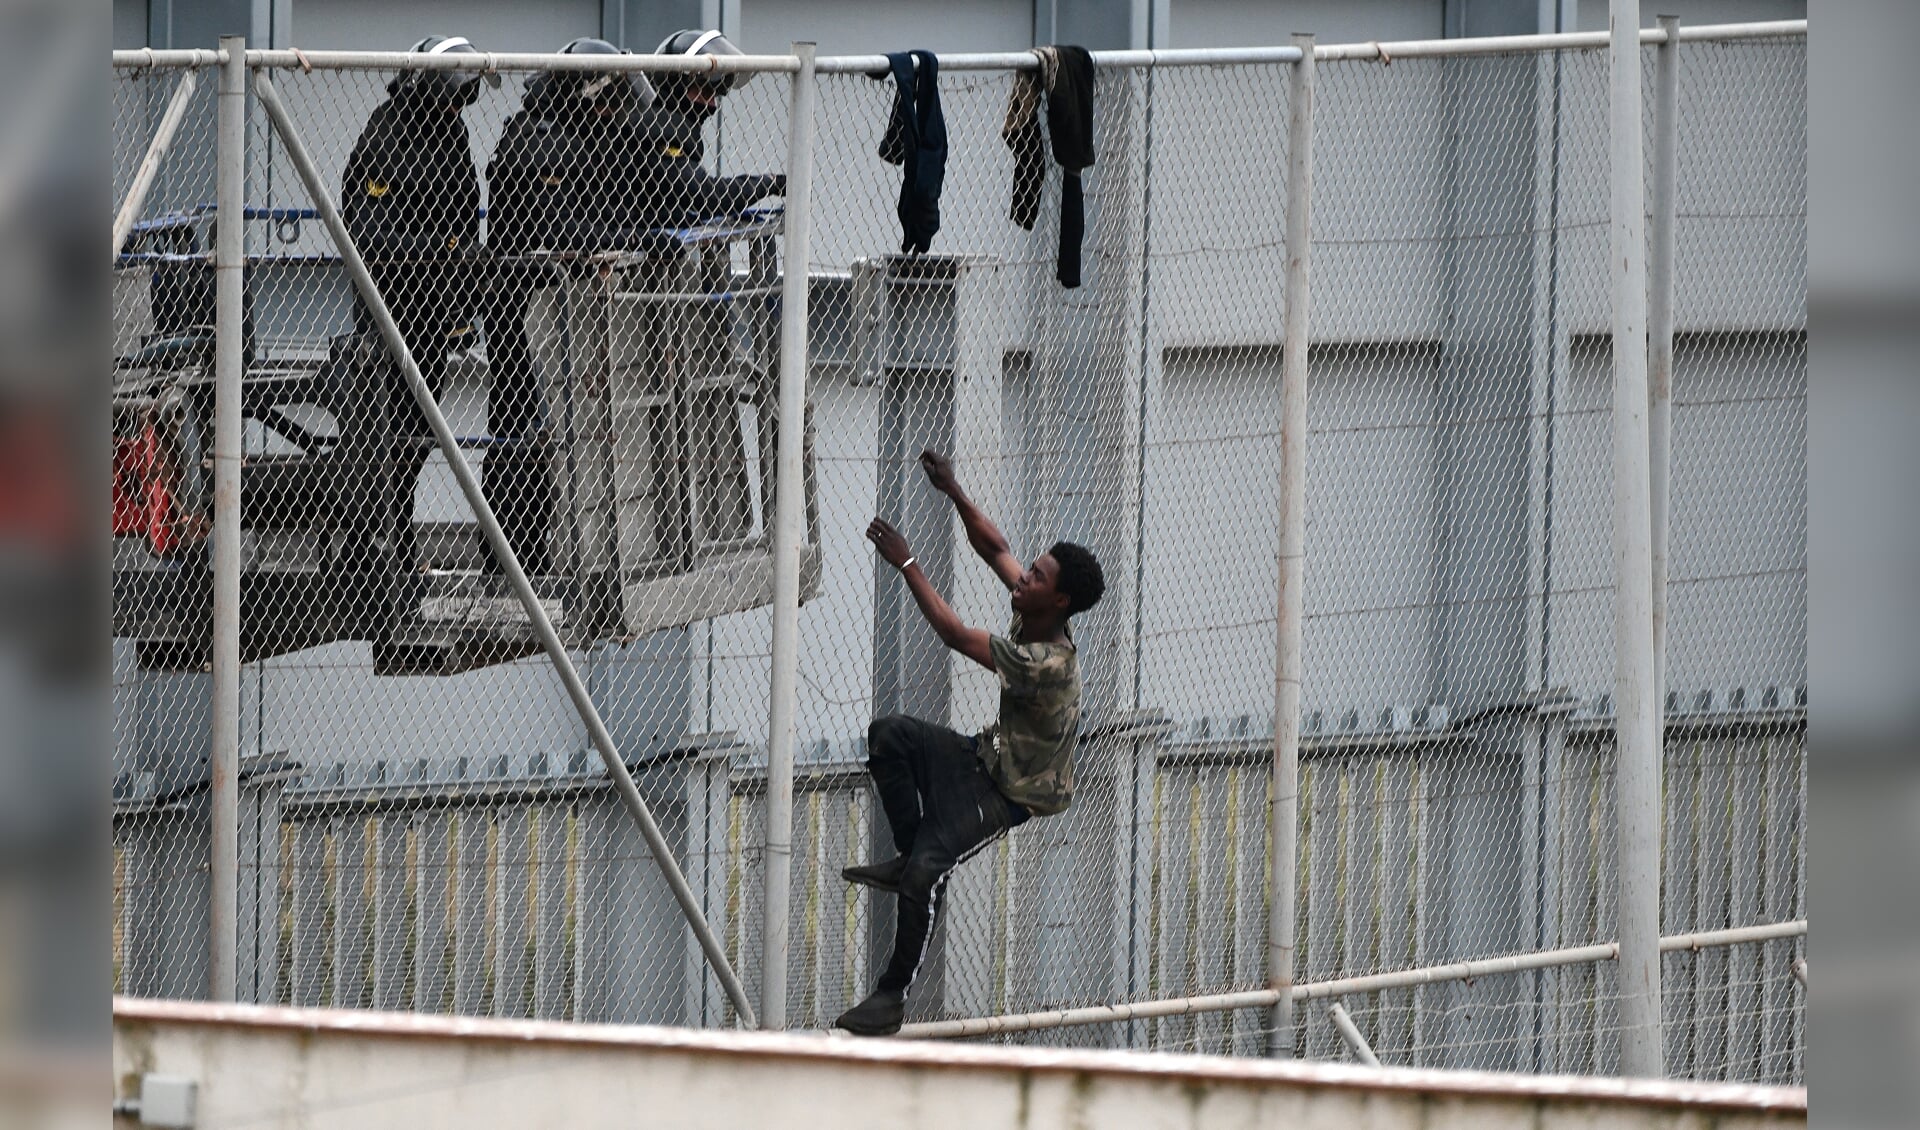 Rond en binnen Europa verschijnen steeds meer hekken. Beeld: een jongere probeert een hek bij de Spaanse exclave Ceuta over te klimmen.